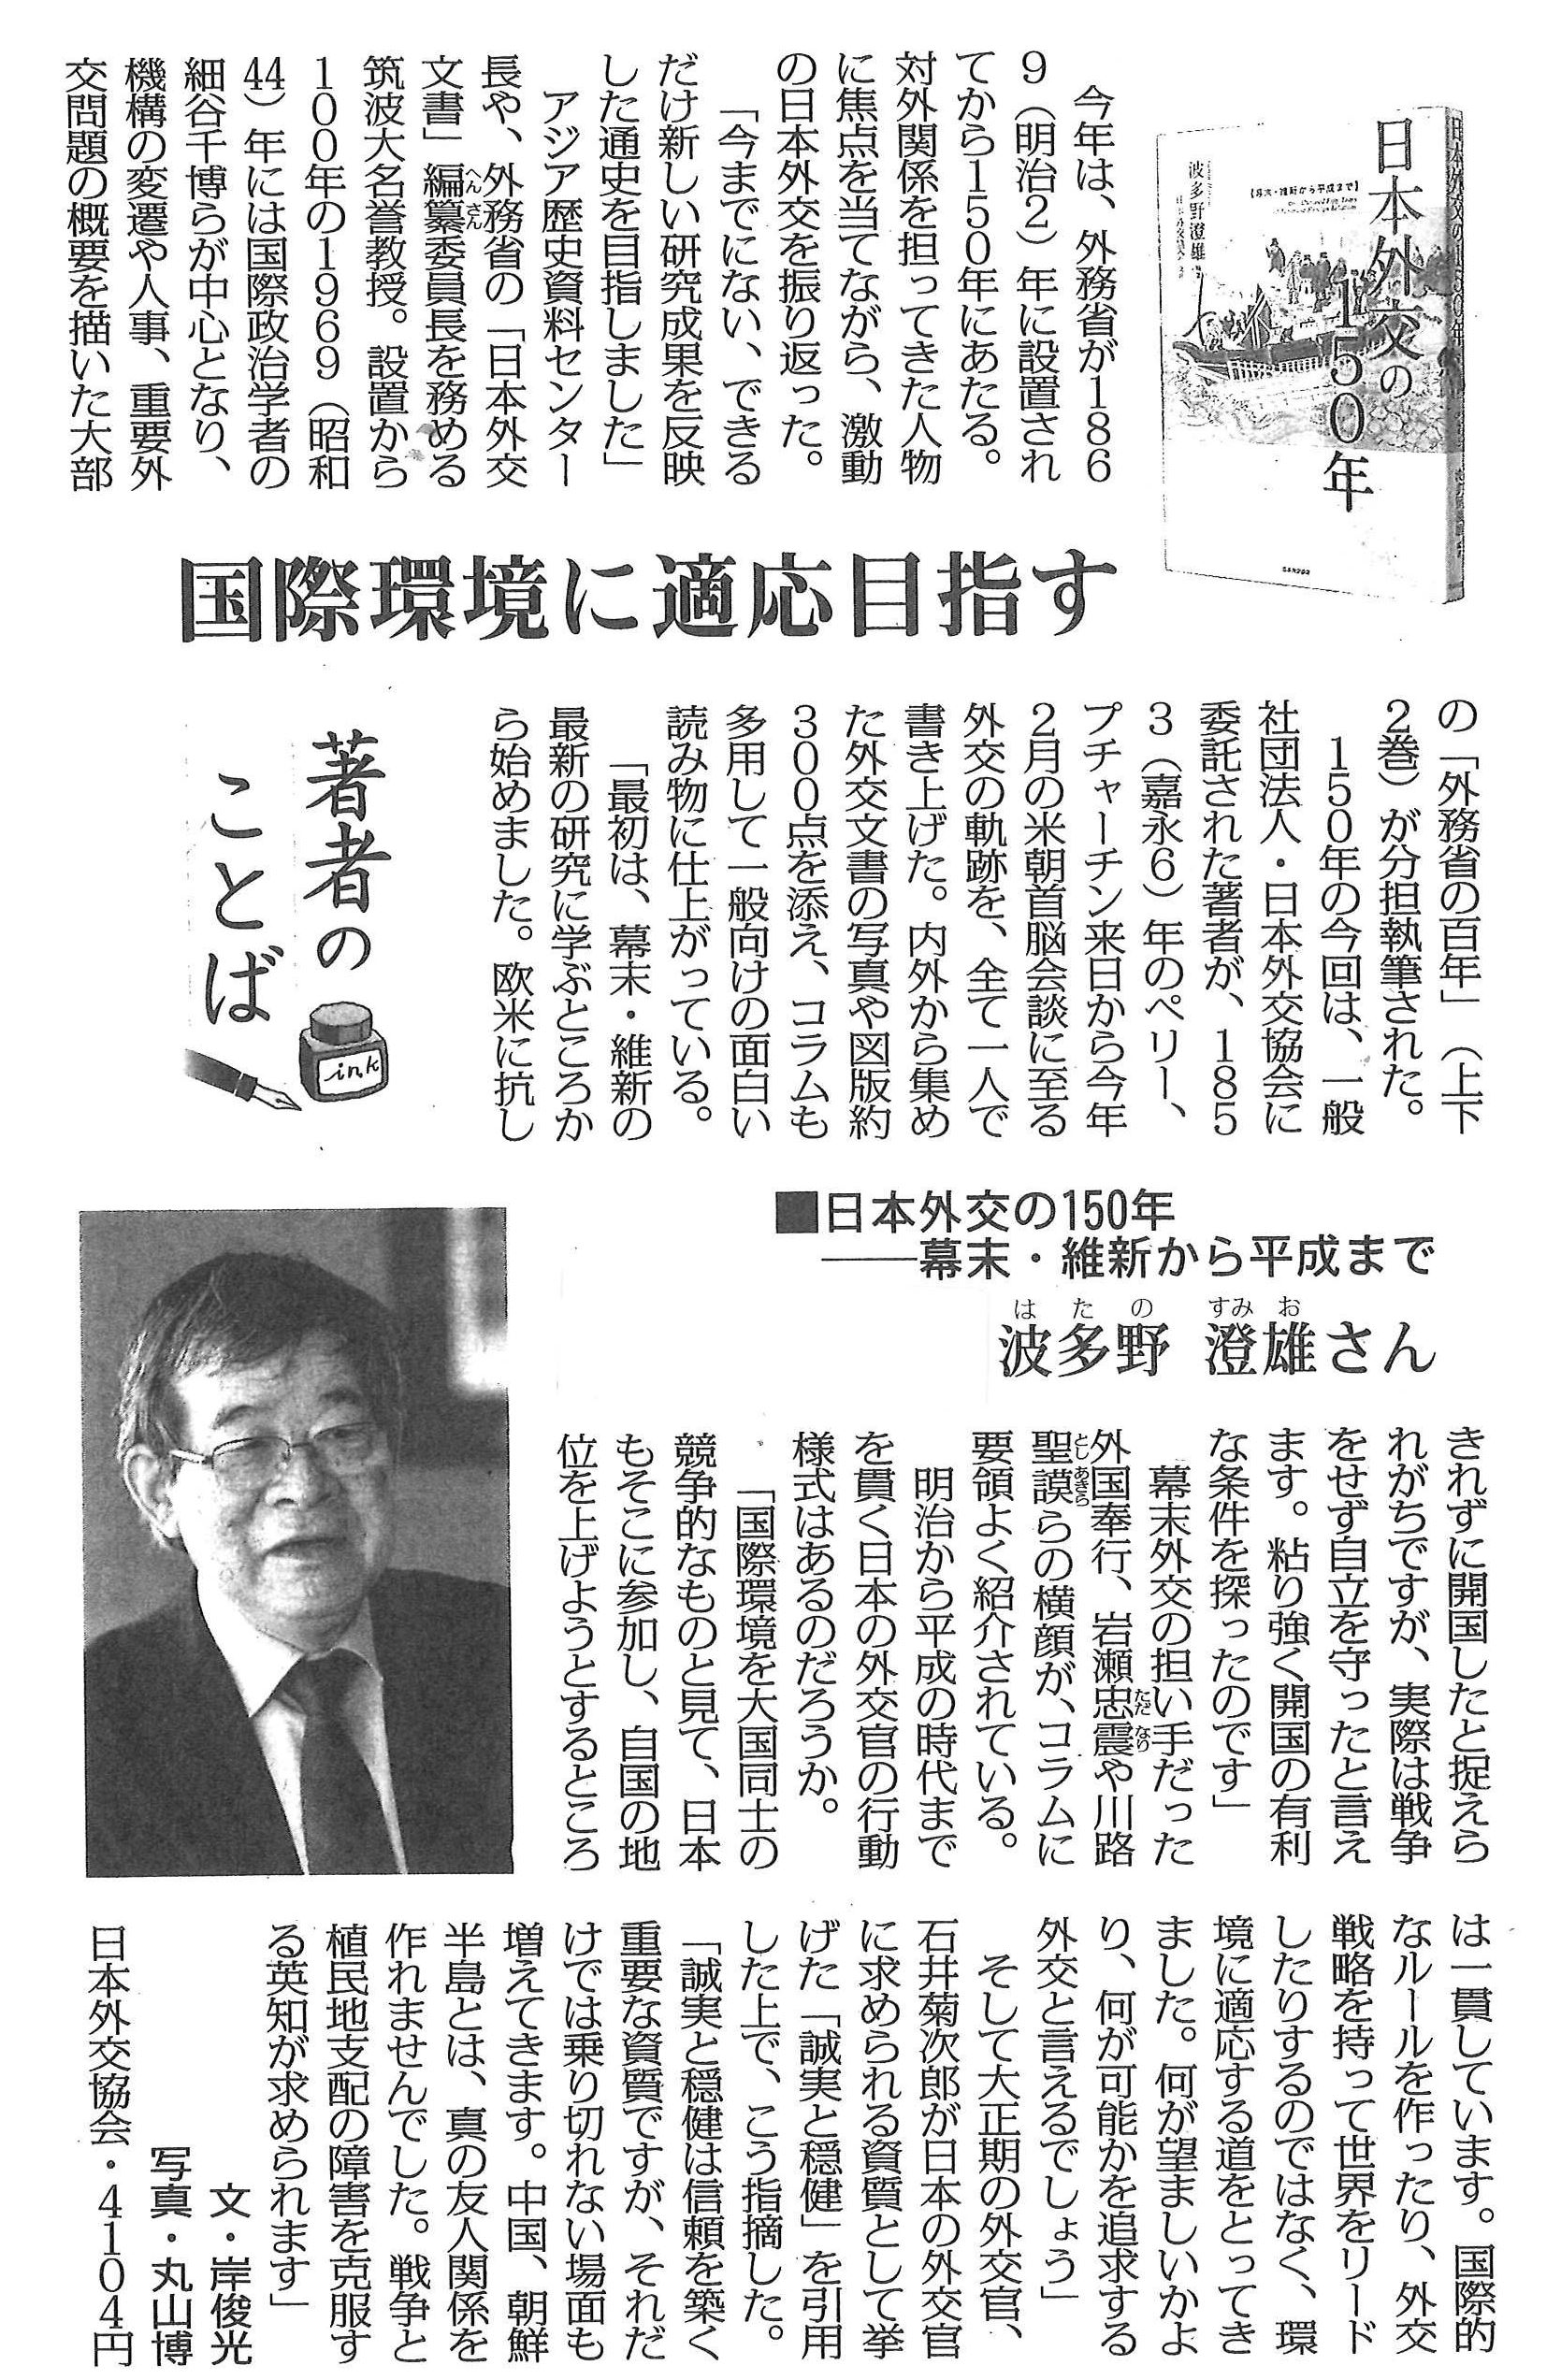 毎日新聞　令和元年７月３０日夕刊（東京最終版）「著者のことば」 